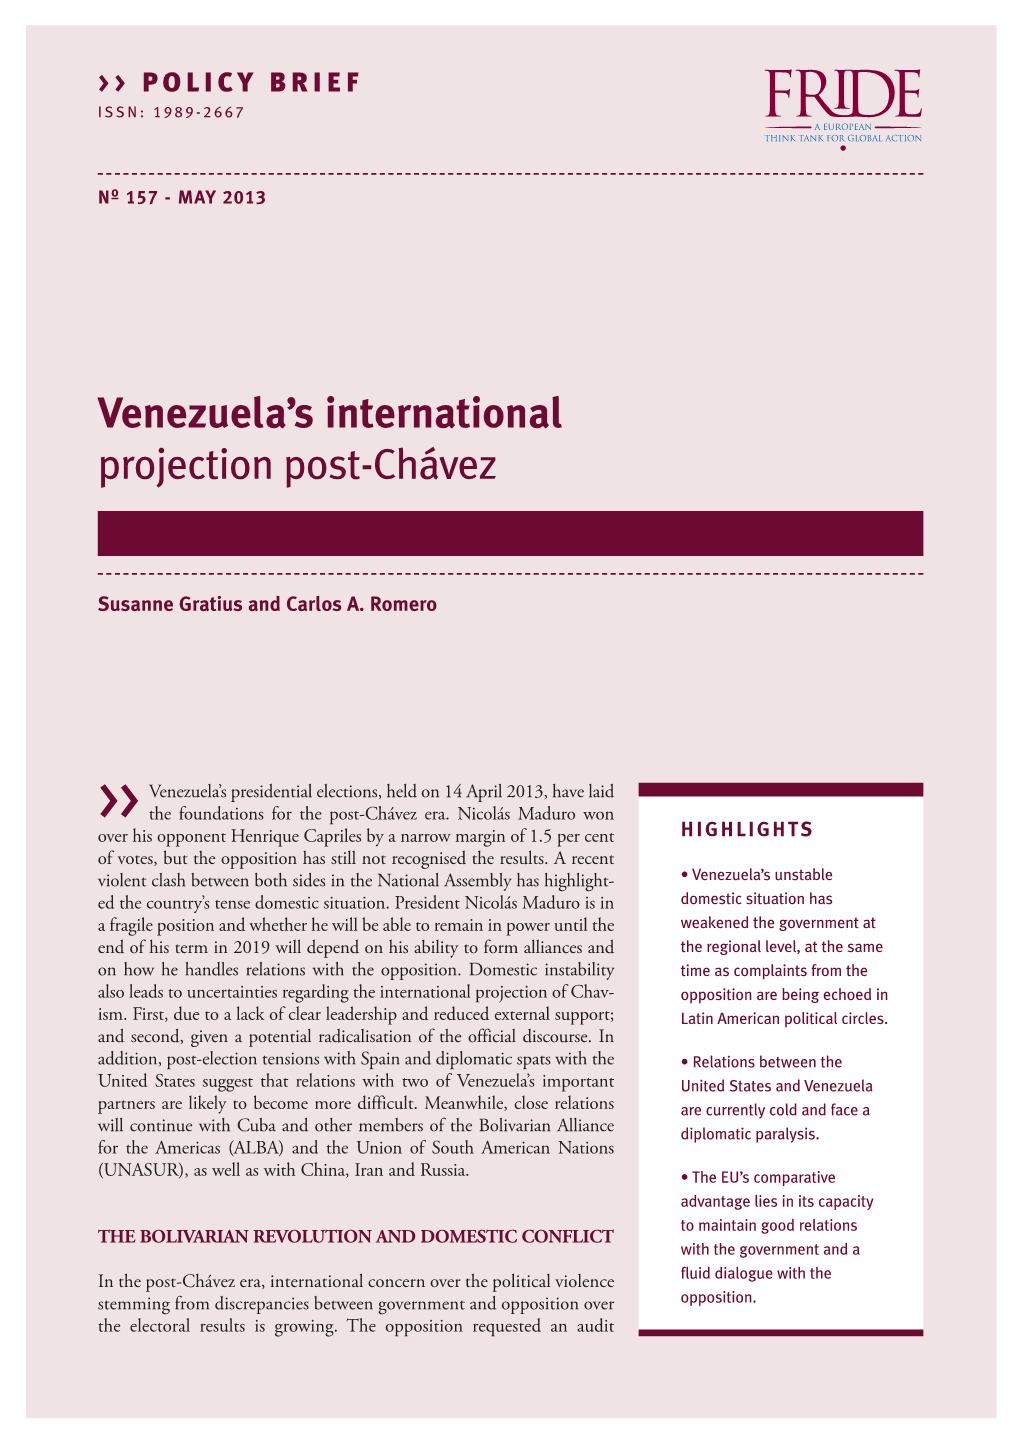 Venezuela's International Projection Post-Chávez